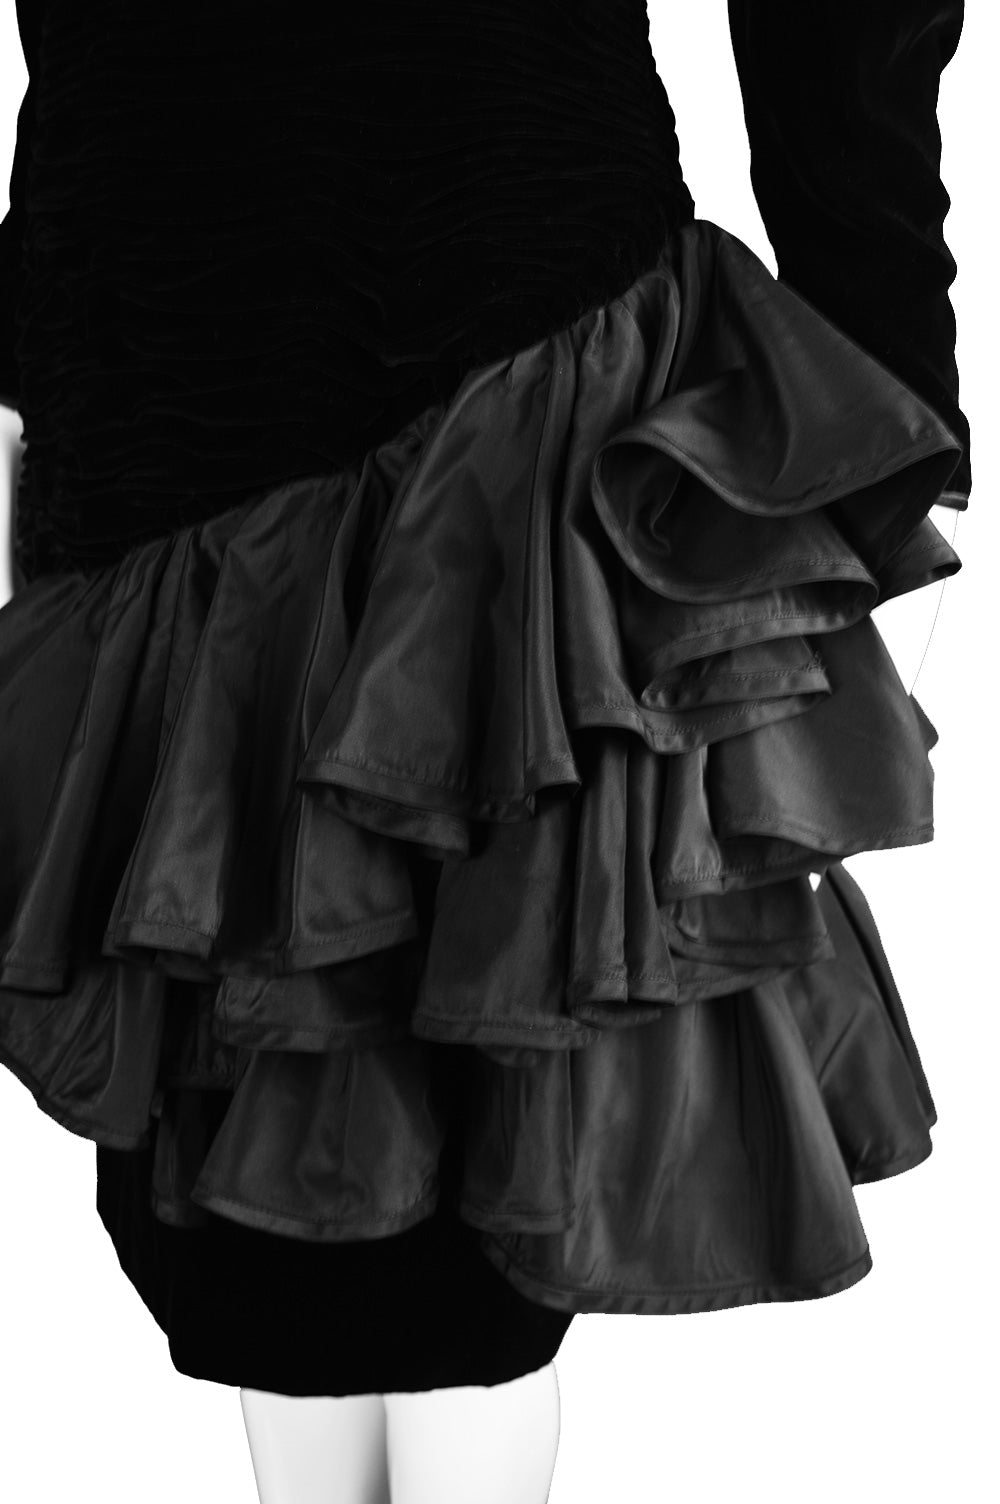 Ruffled skirt of an Emanuel Ungaro 1980s dress